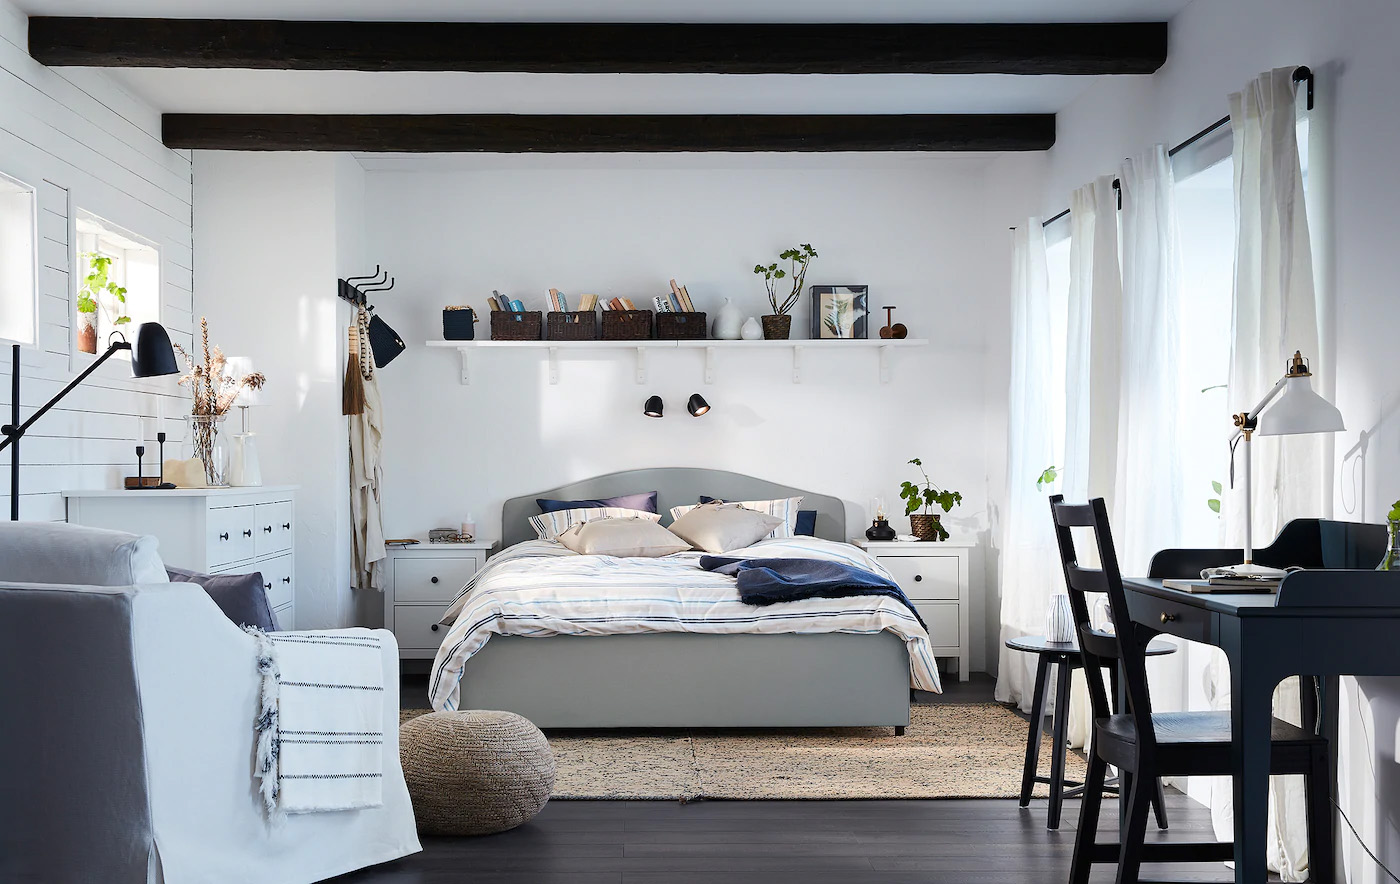 睡房產品、睡房設計│ IKEA 為你打造實用時尚小空間